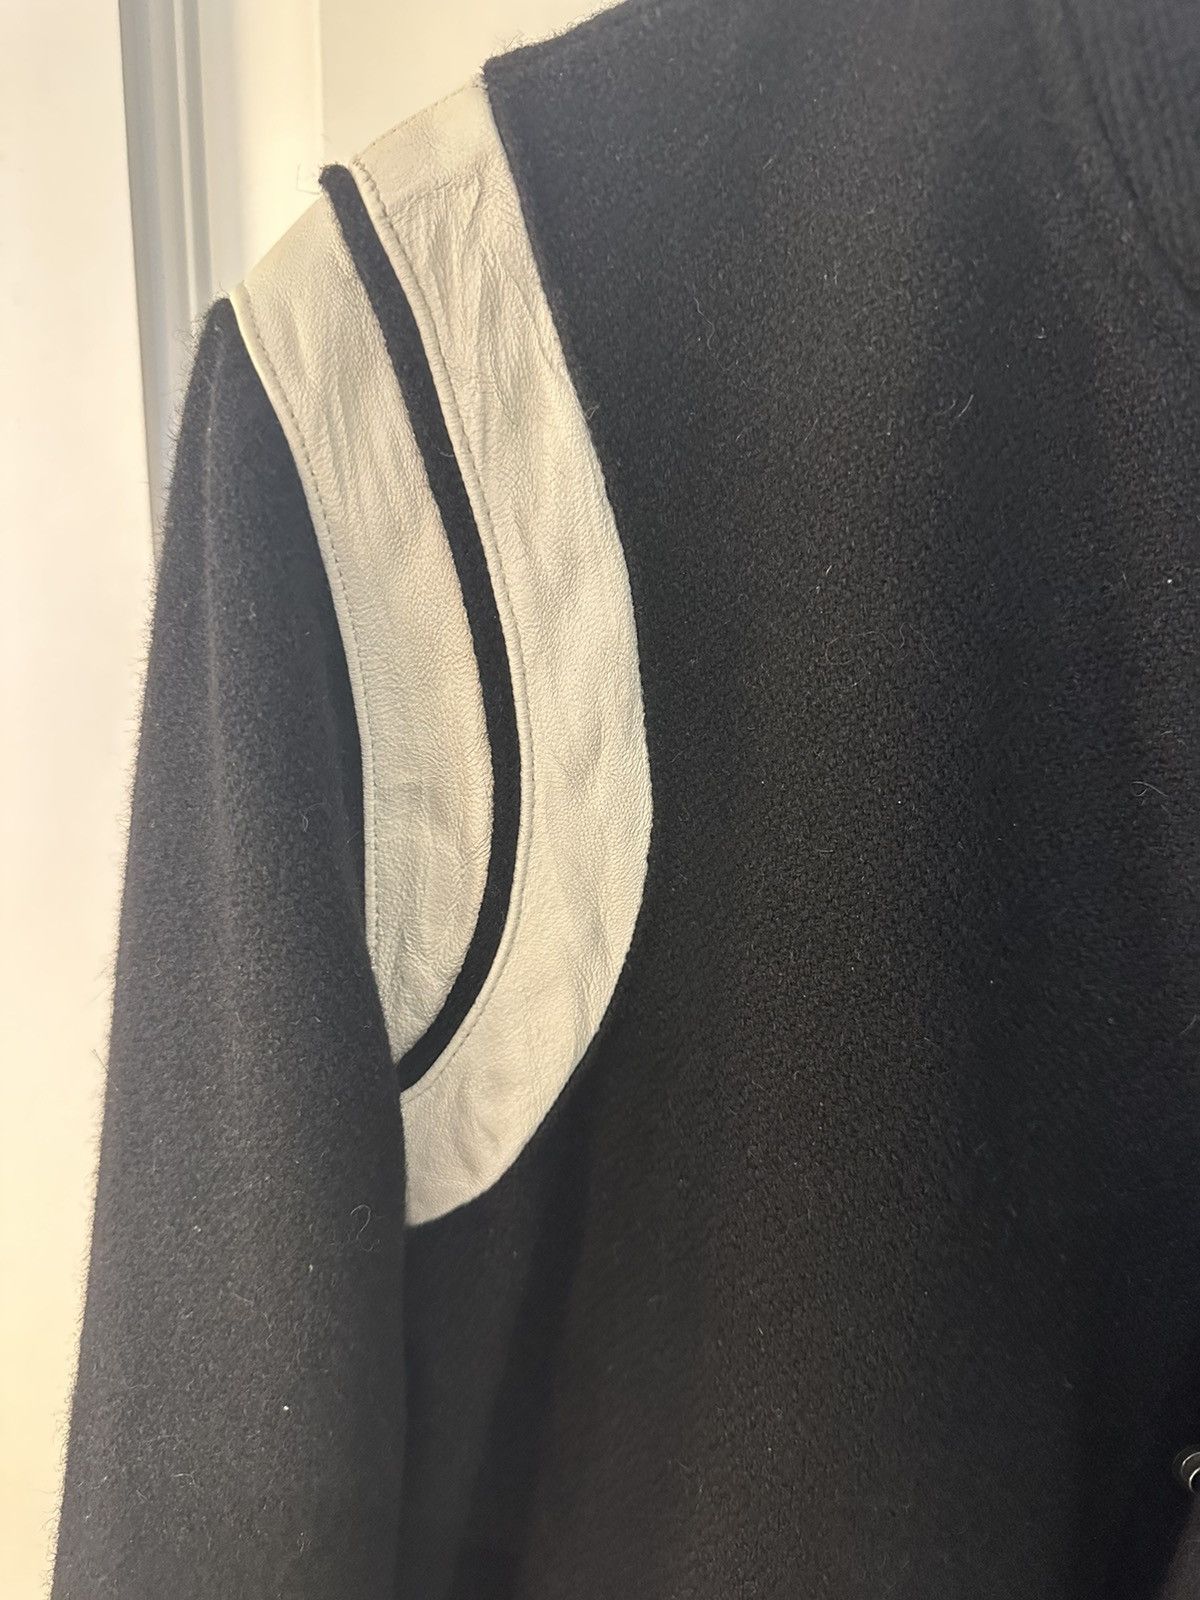 Saint Laurent Paris 2018 Saint Laurent Teddy Jacket Size US S / EU 44-46 / 1 - 2 Preview